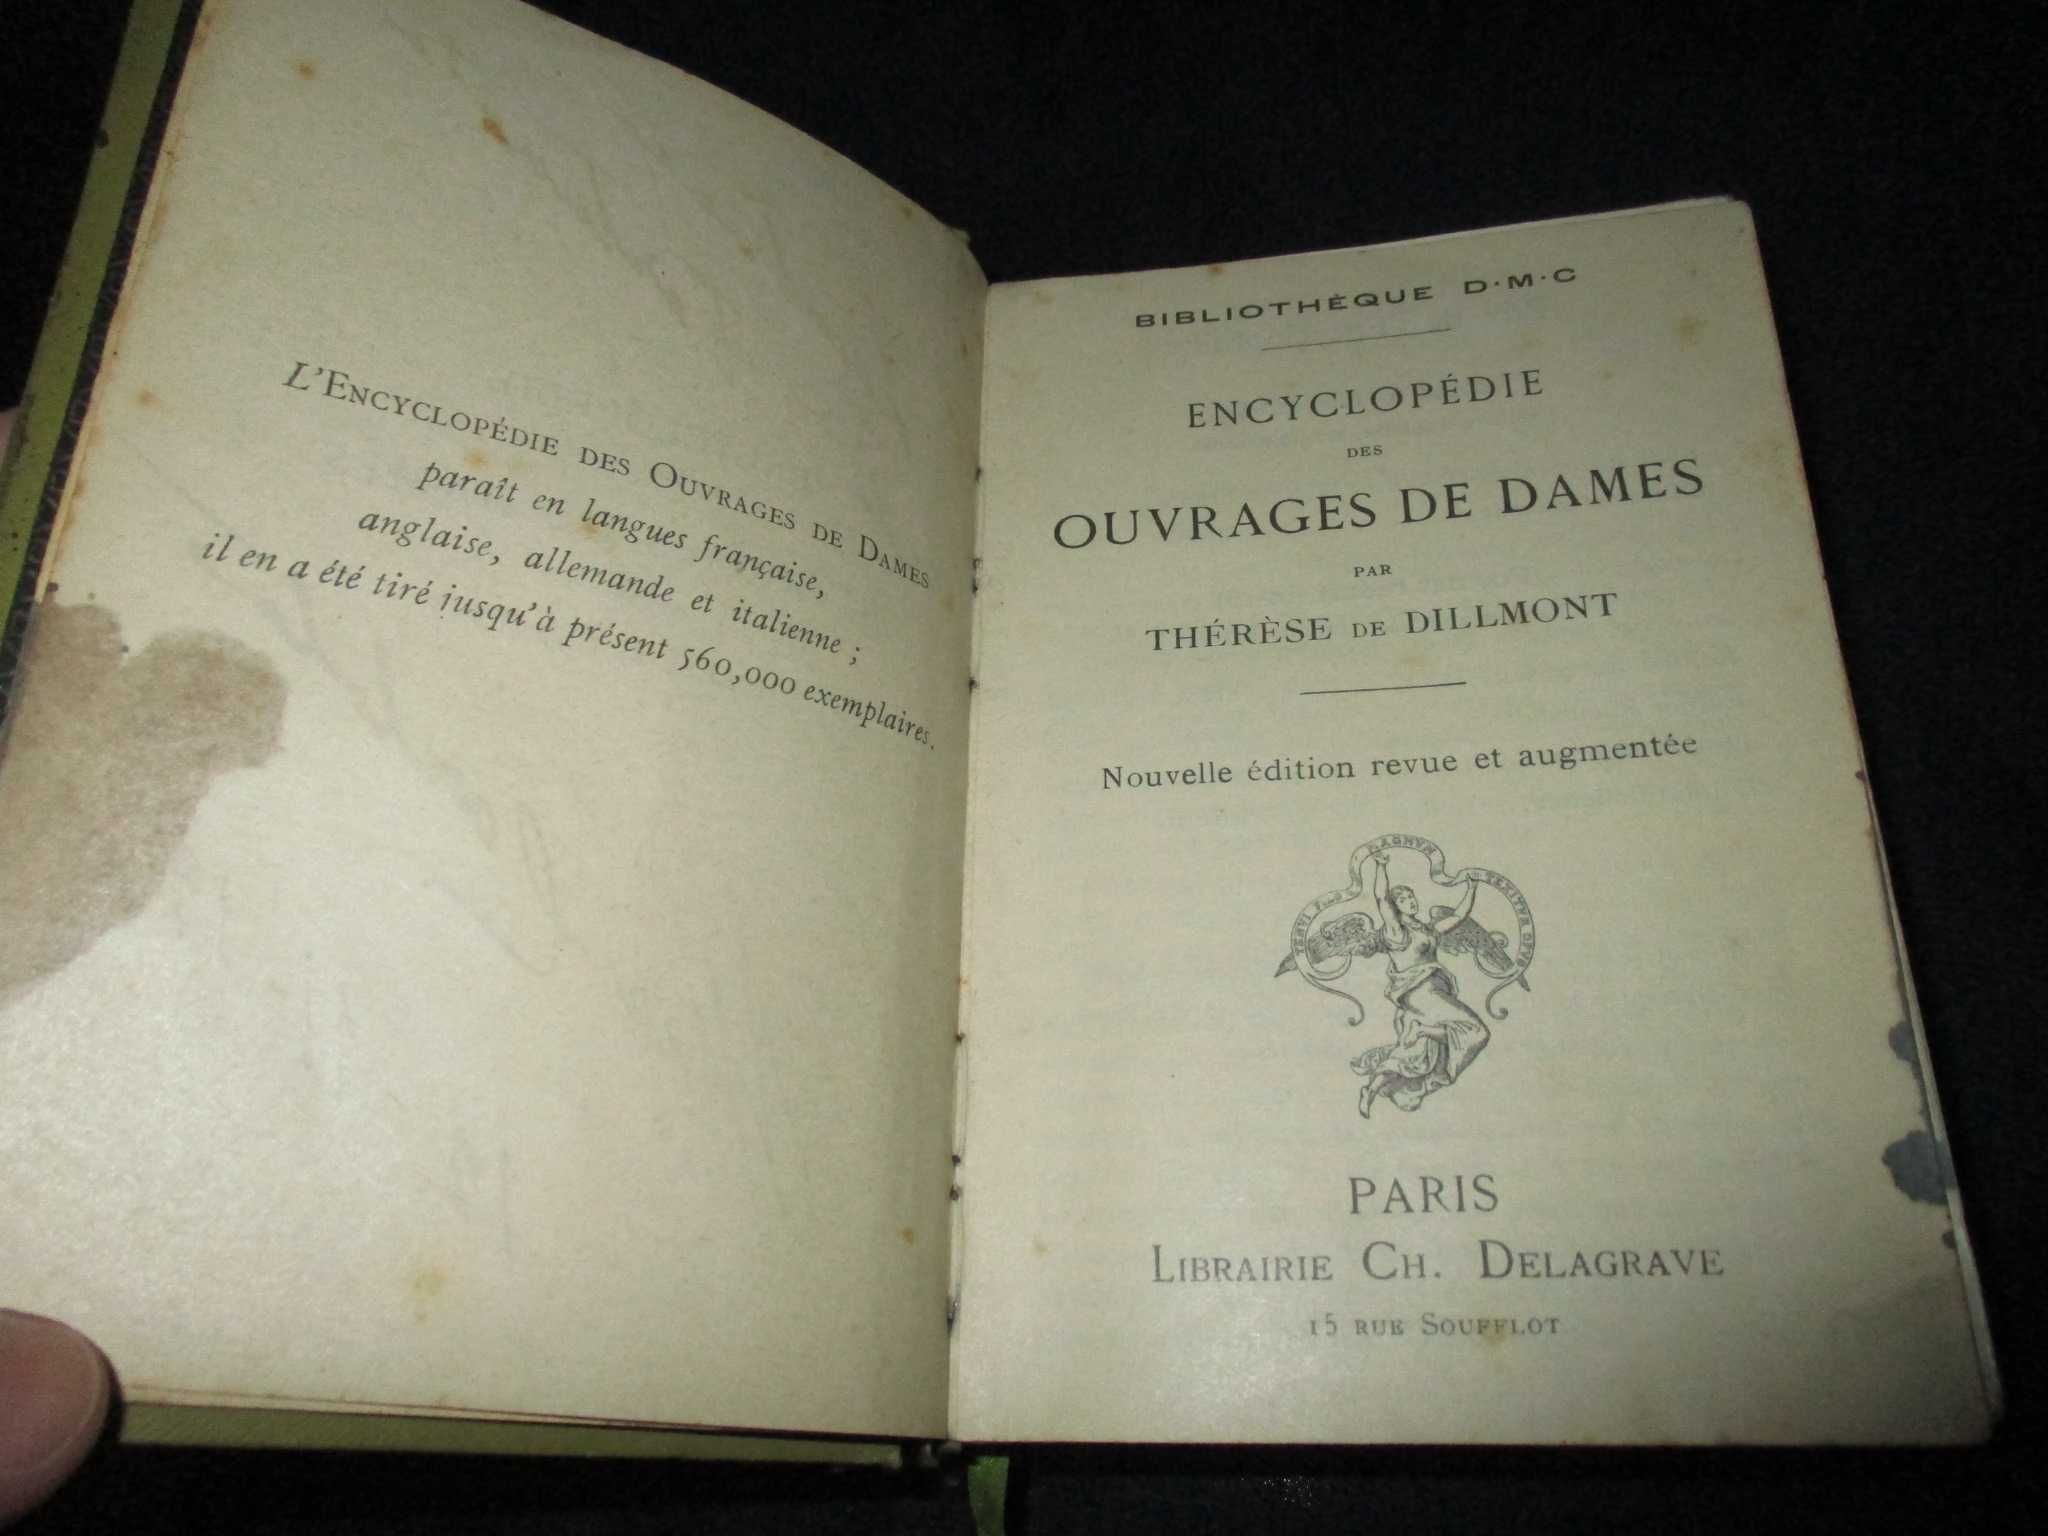 Livro Encyclopédie des Ouvrages de Dames Thérèse de Dillmont